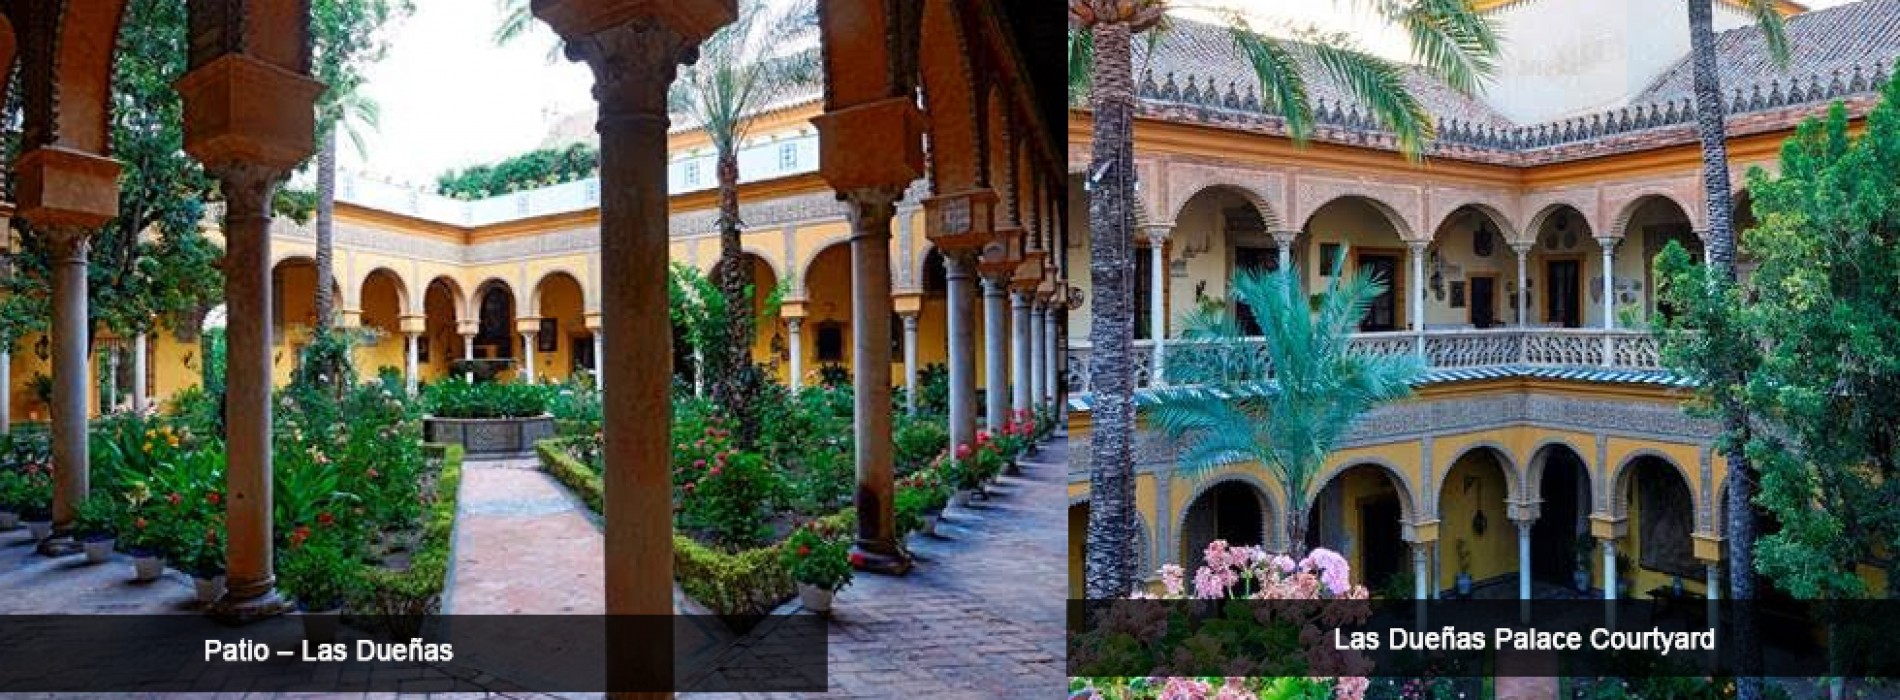 Palacio de las Dueñas – Home of a Seville Icon